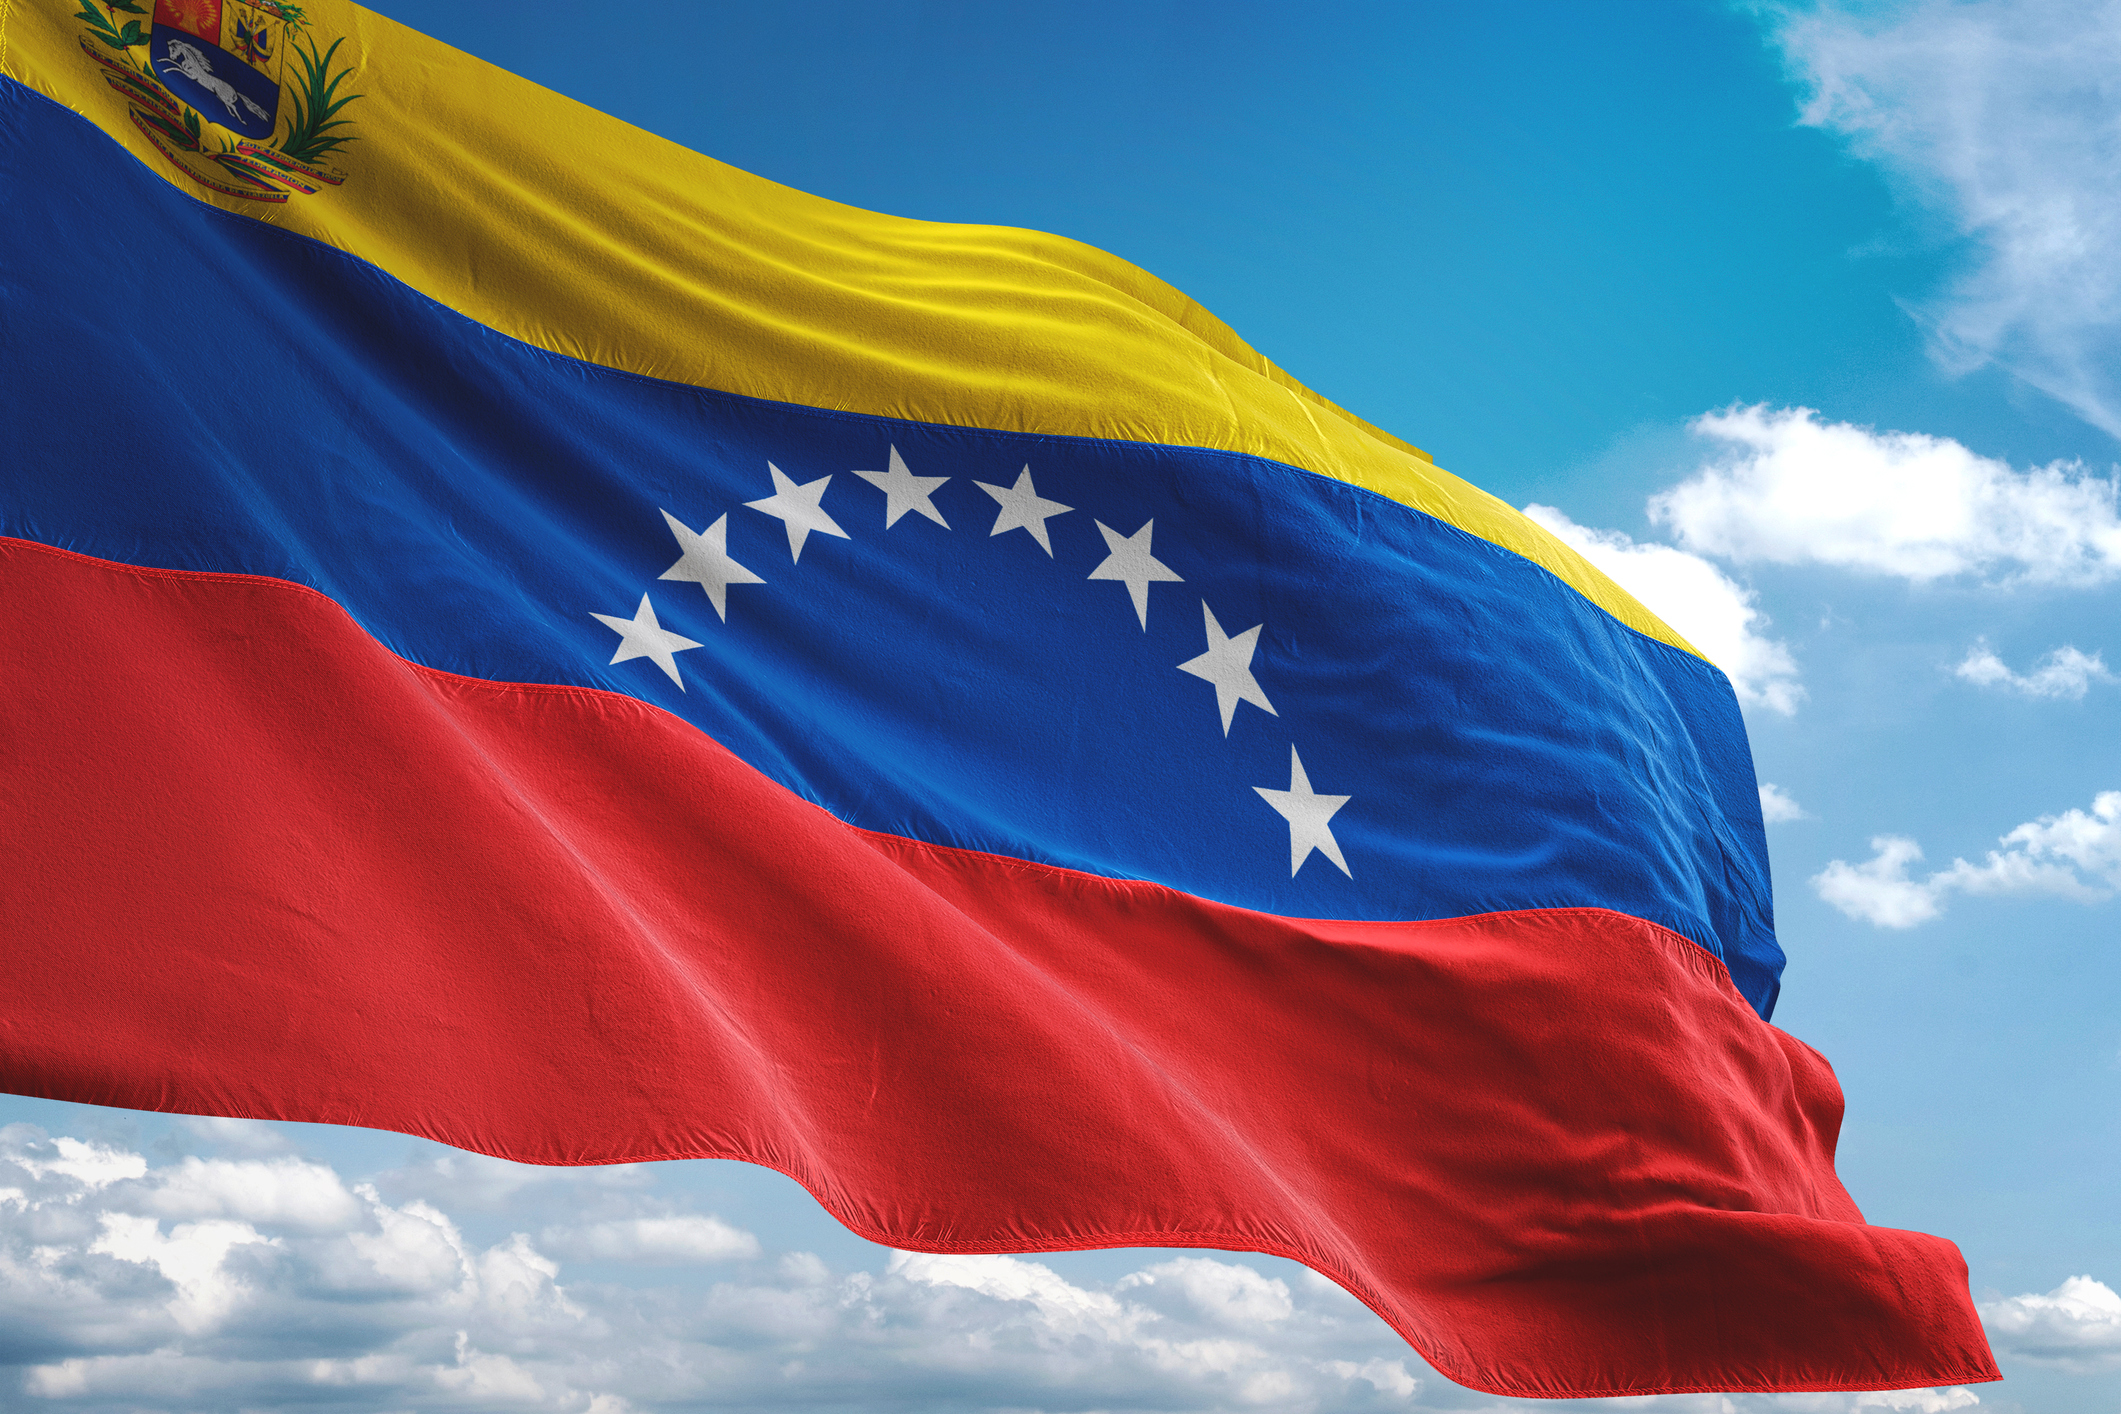 VenezuelanFlag 